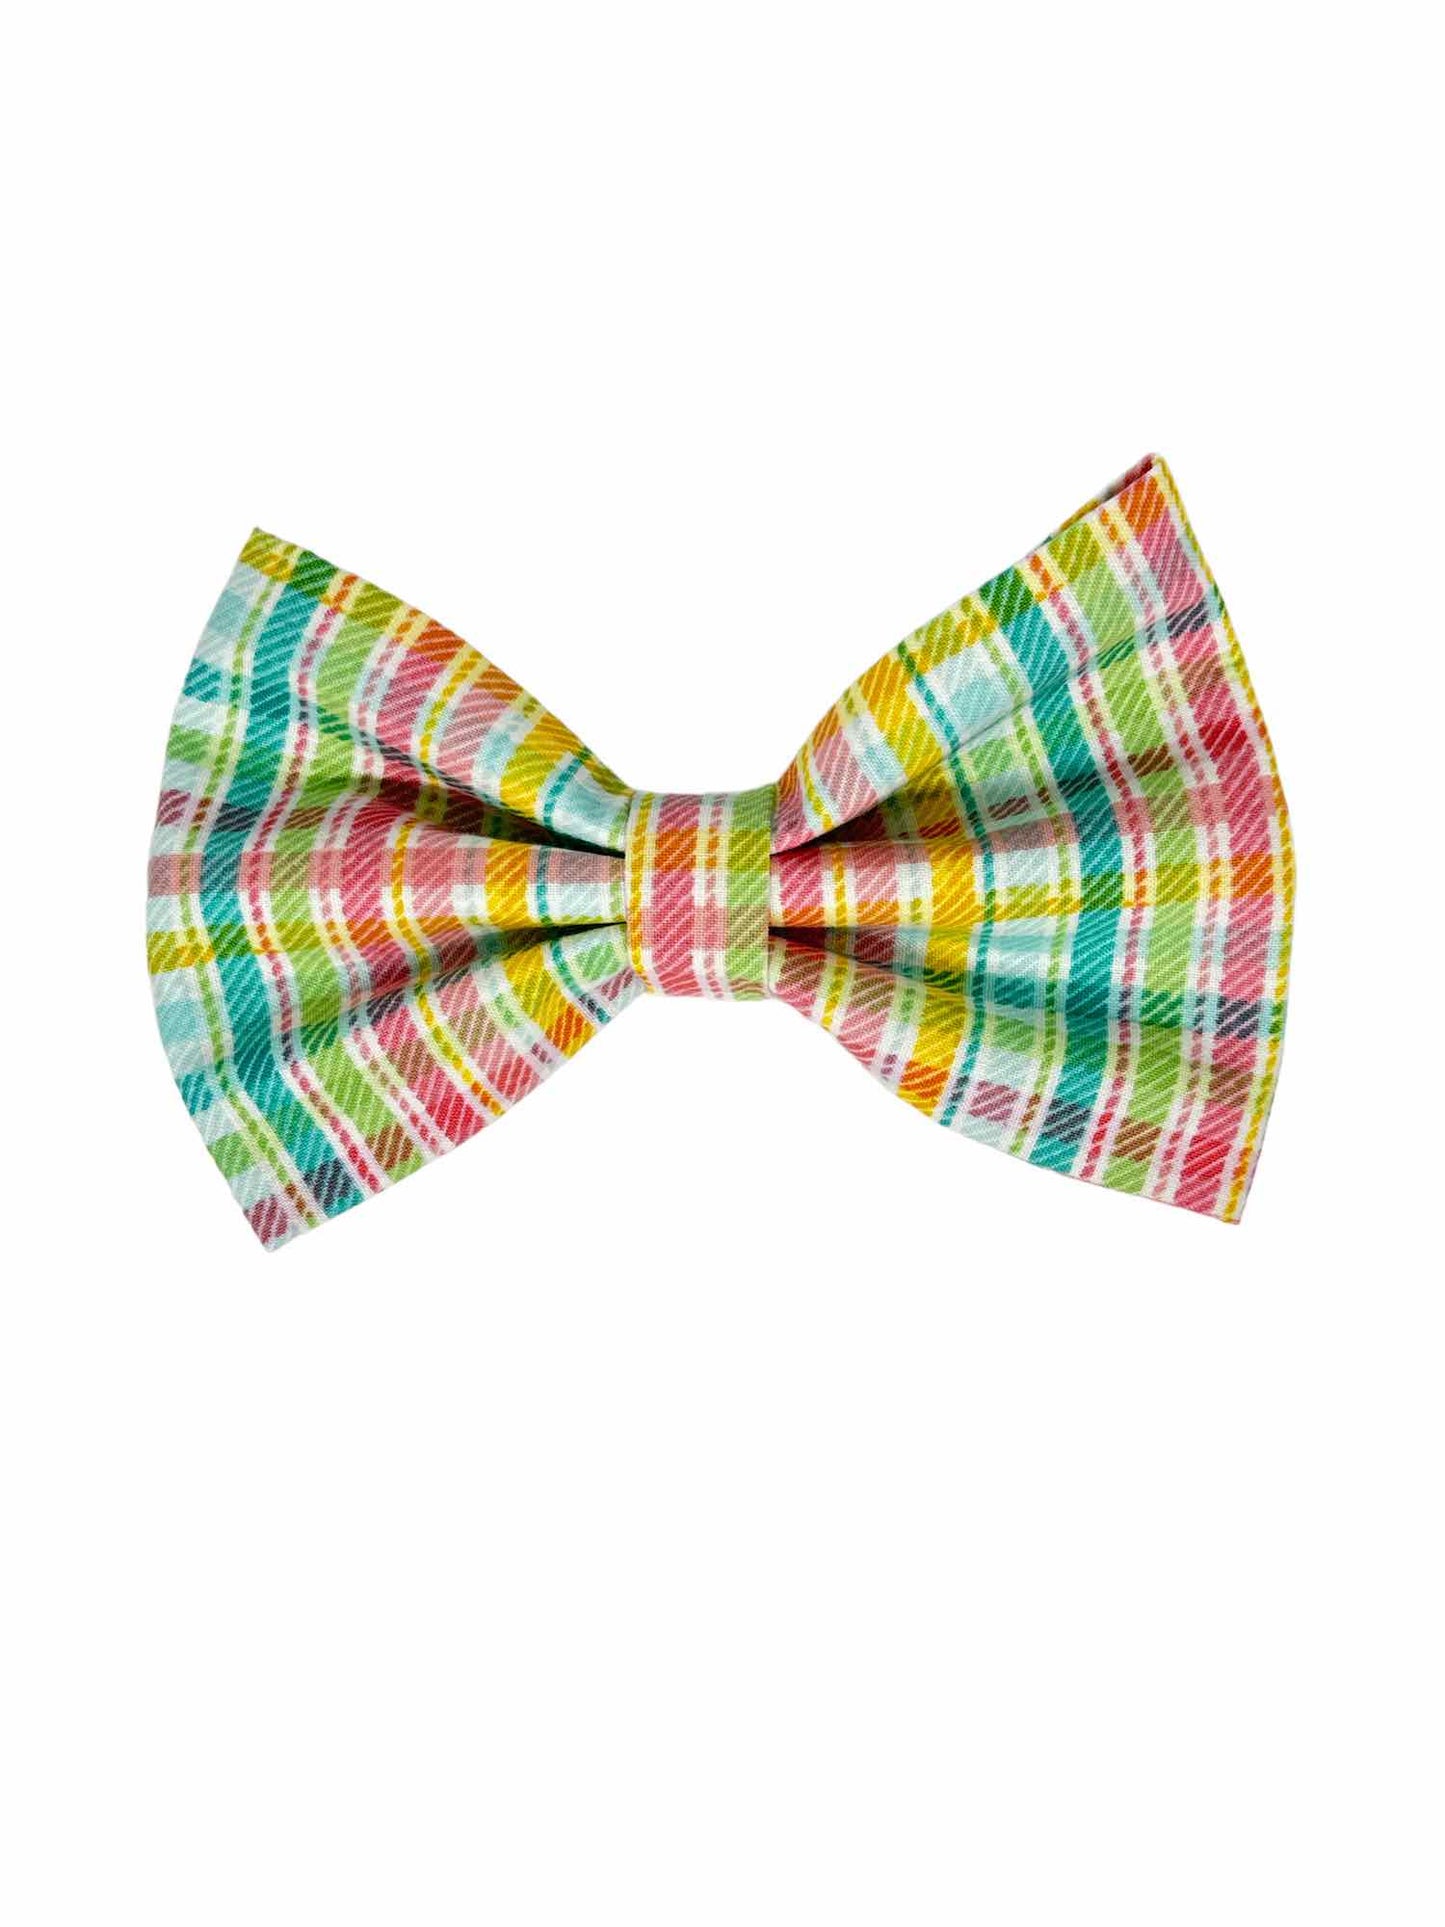 Springtime Bonnet Parade Bow Tie